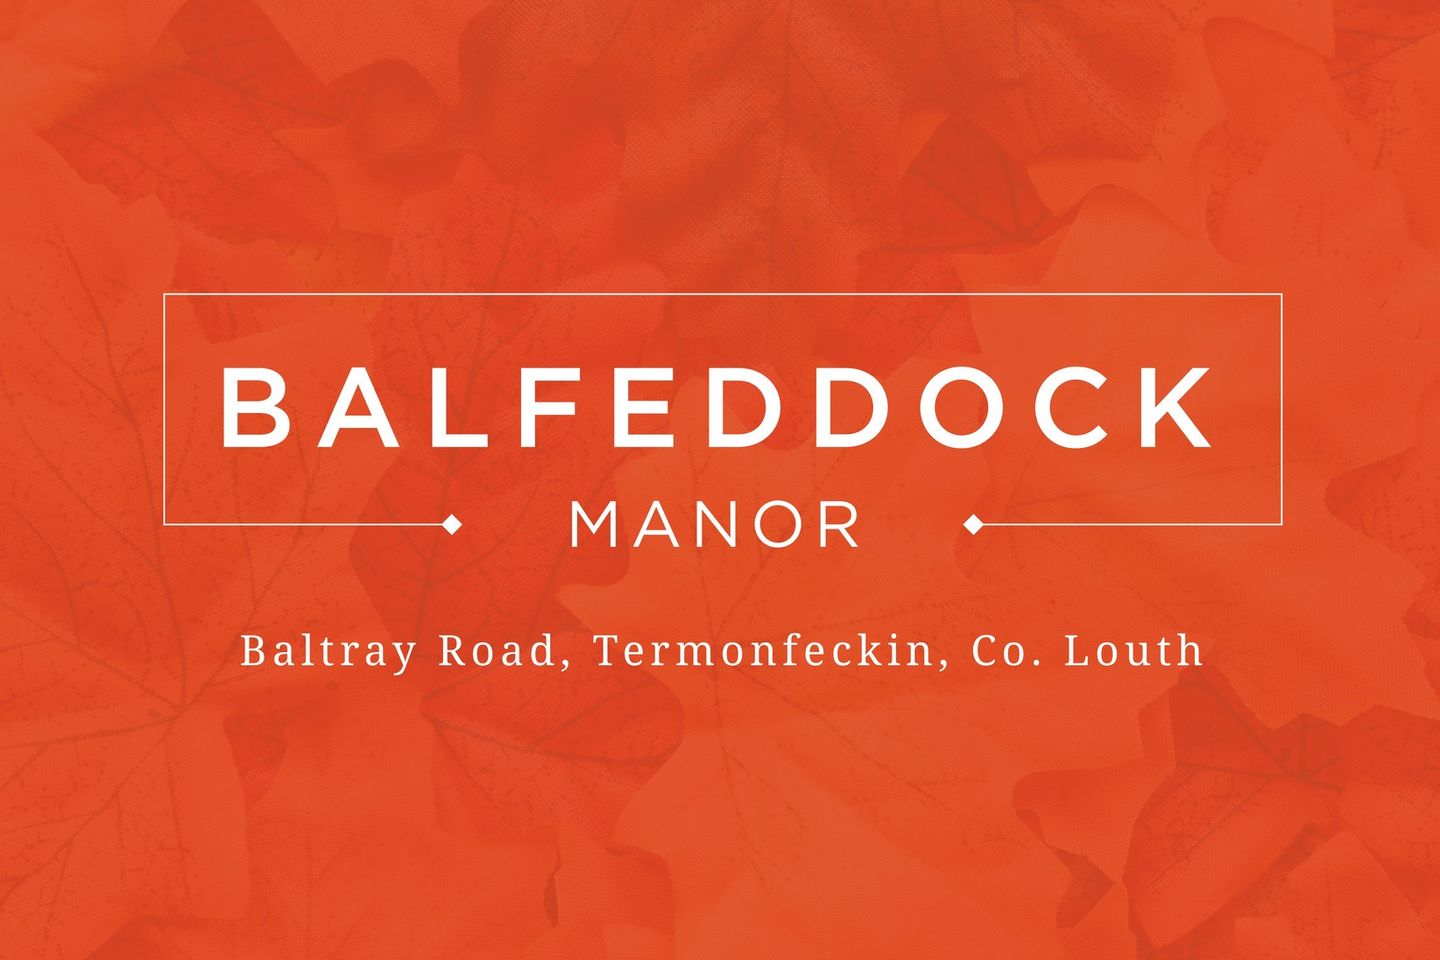 Balfeddock Manor, Baltray Road, Termonfeckin, Co. Louth